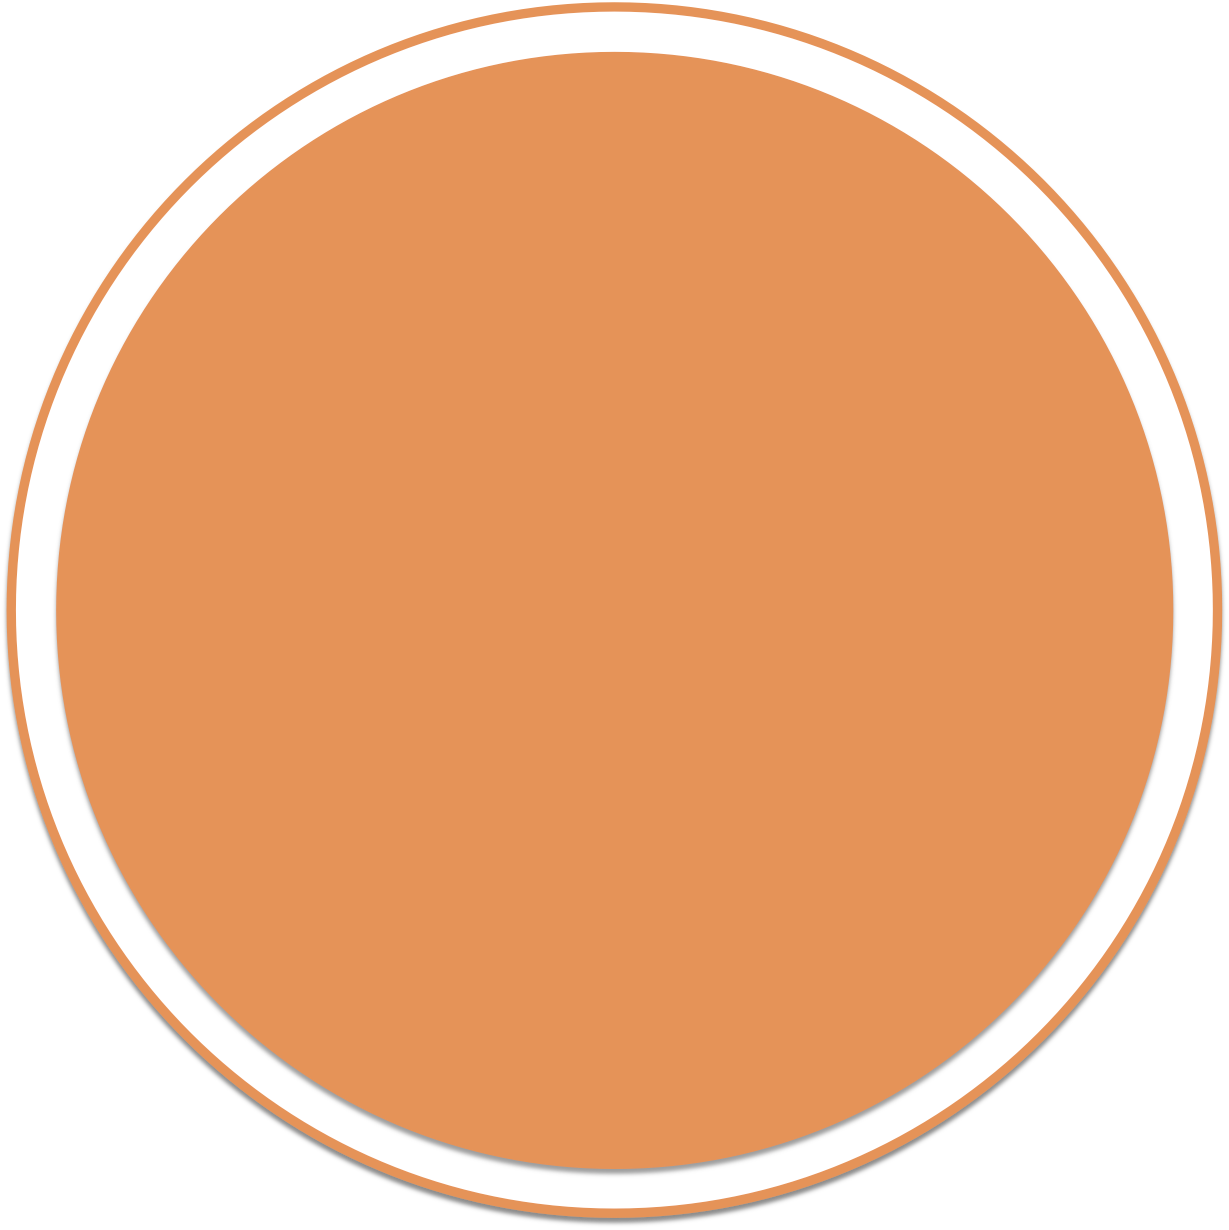 Blank Orange Circle Graphic